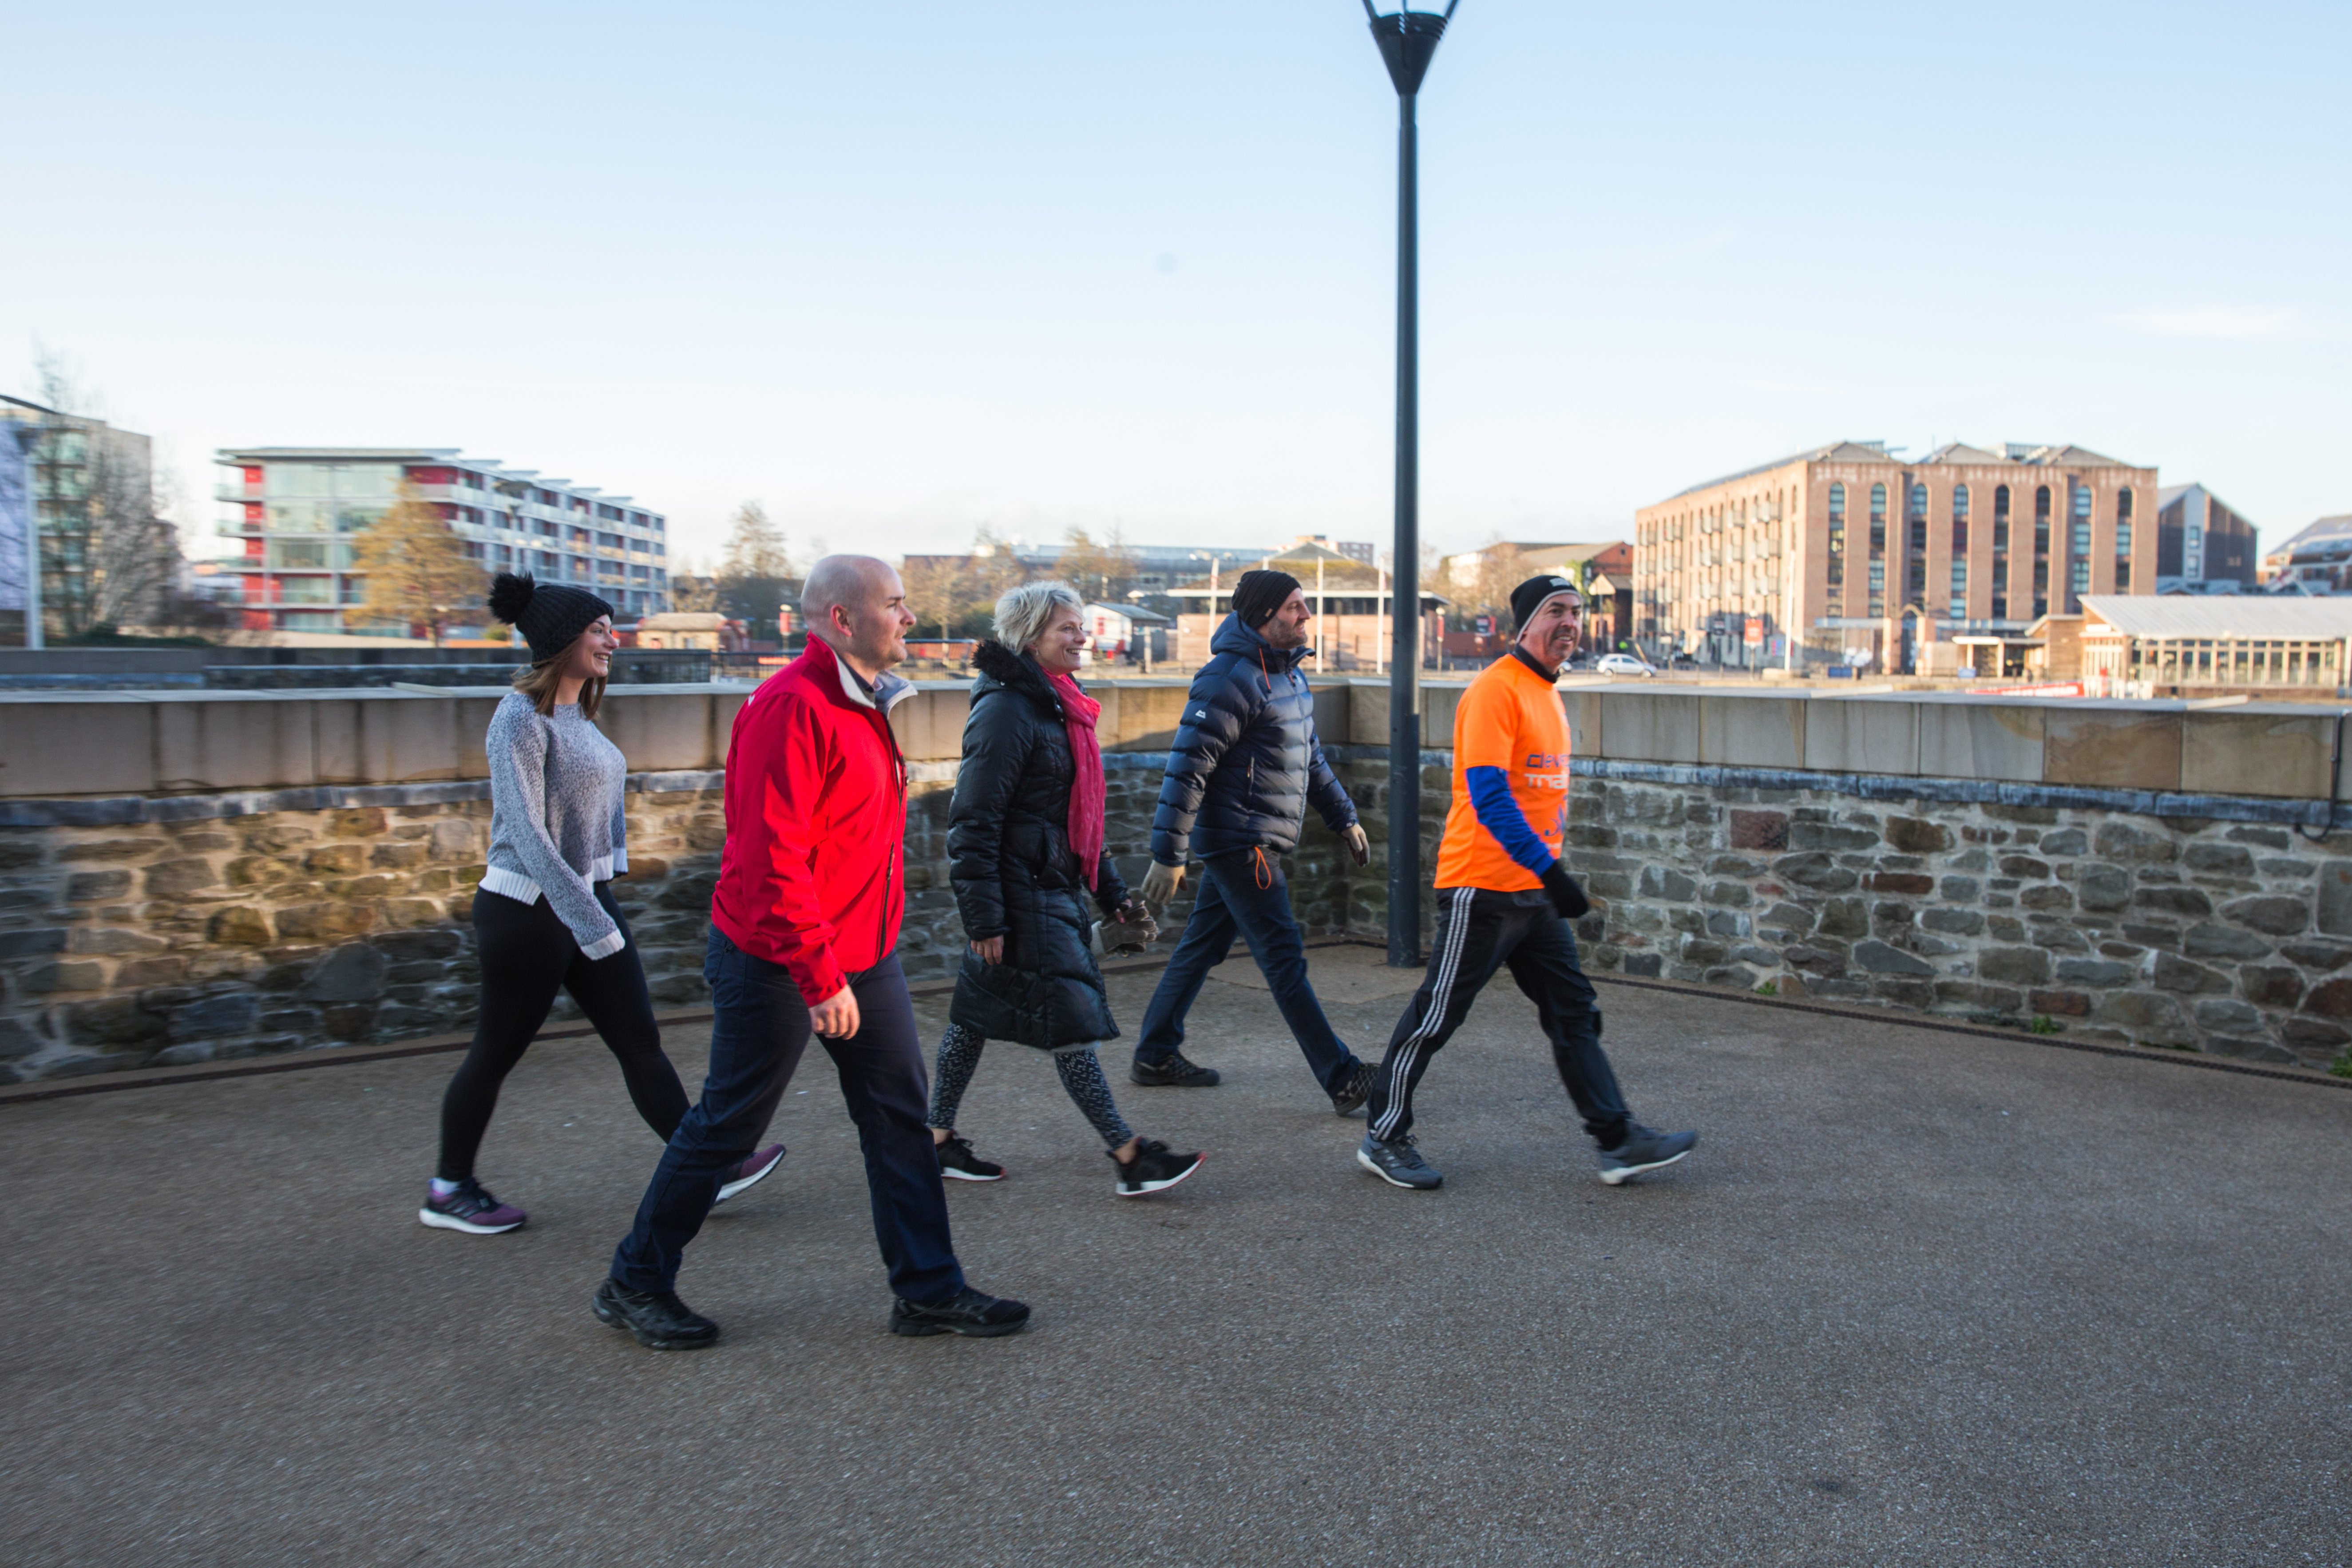 Workout + Network: Harbourside Walk, Run or Jog